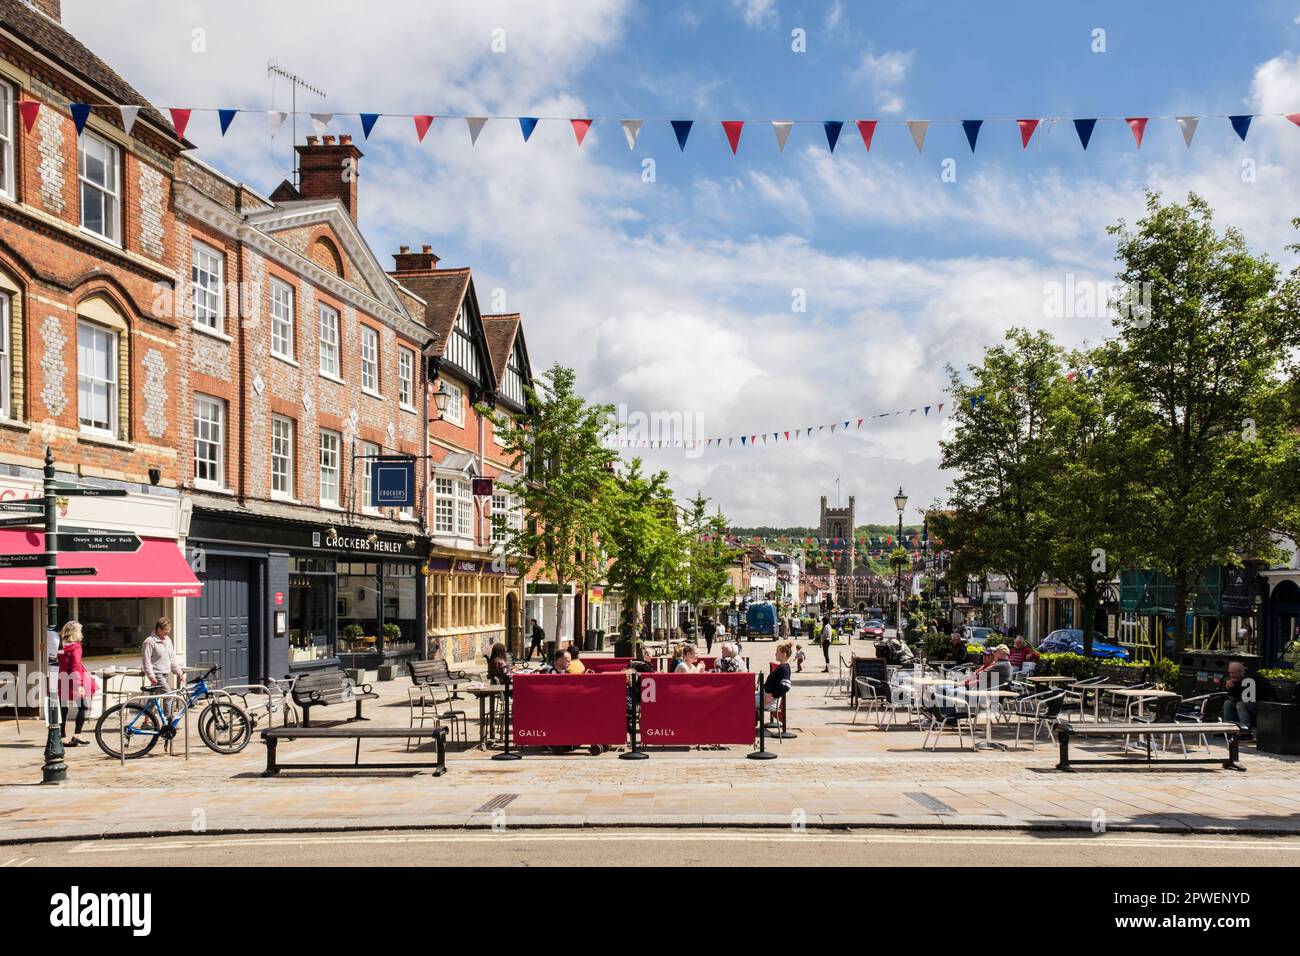 Straßenszene mit Leuten in Cafés im Stadtzentrum. Henley-on-Thames, Oxfordshire, England, Großbritannien, Großbritannien Stockfoto